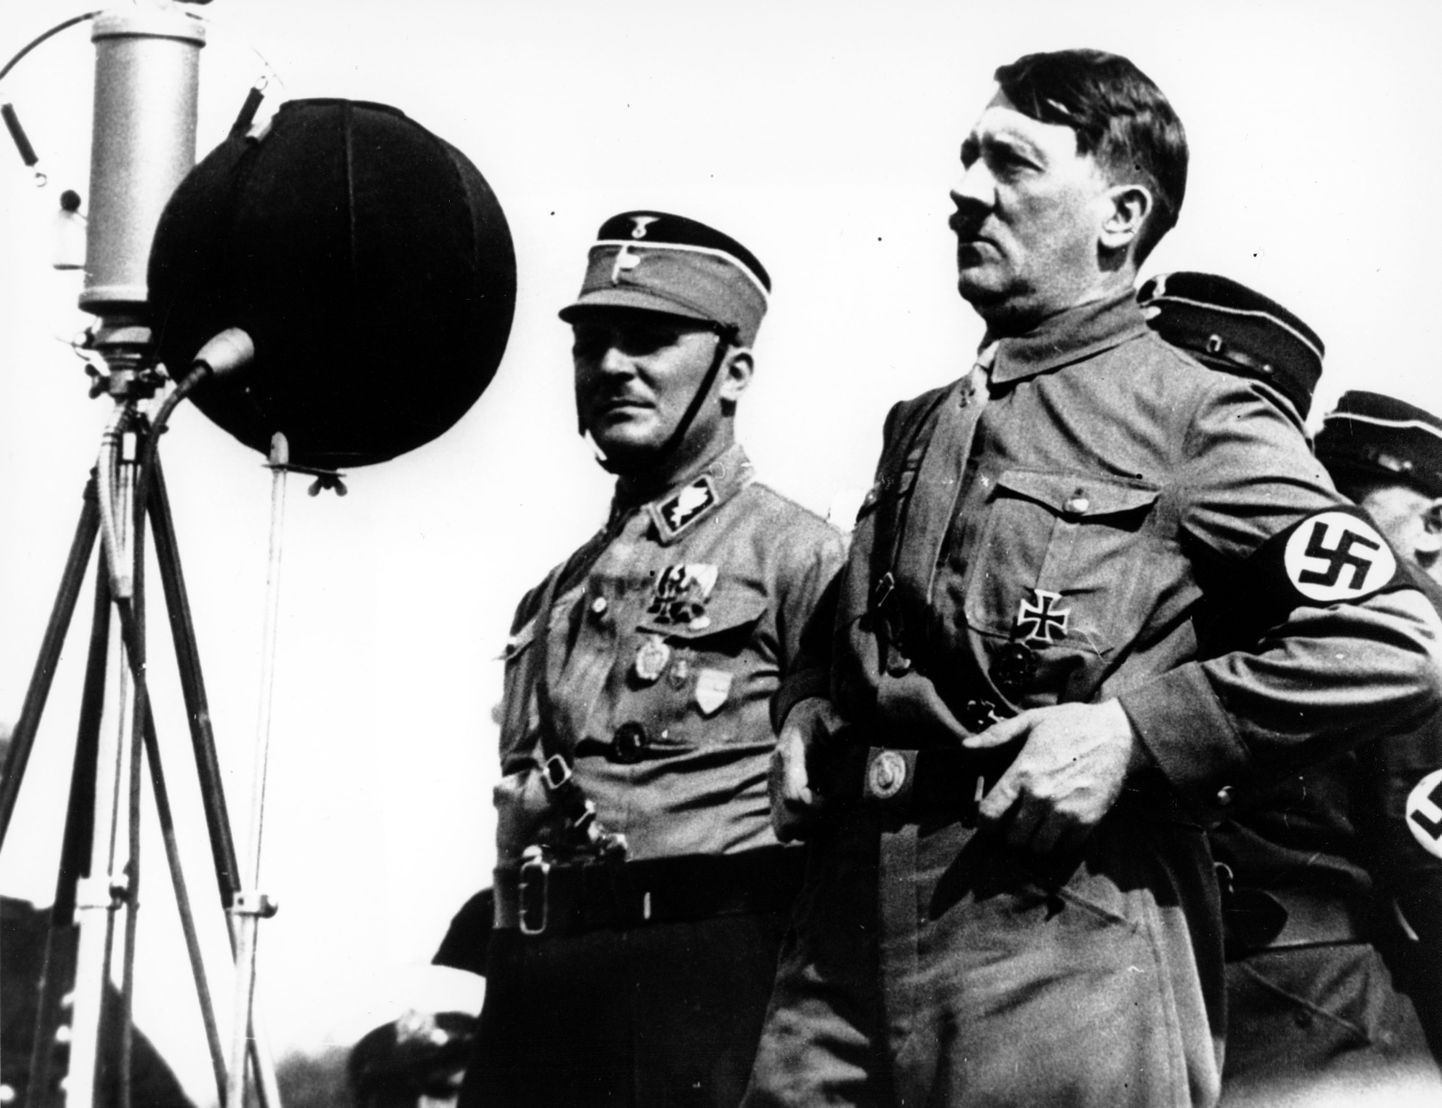 Saksamaa kantsler Adolf Hitler pidamas 7. mail 1933 Kielis kõnet